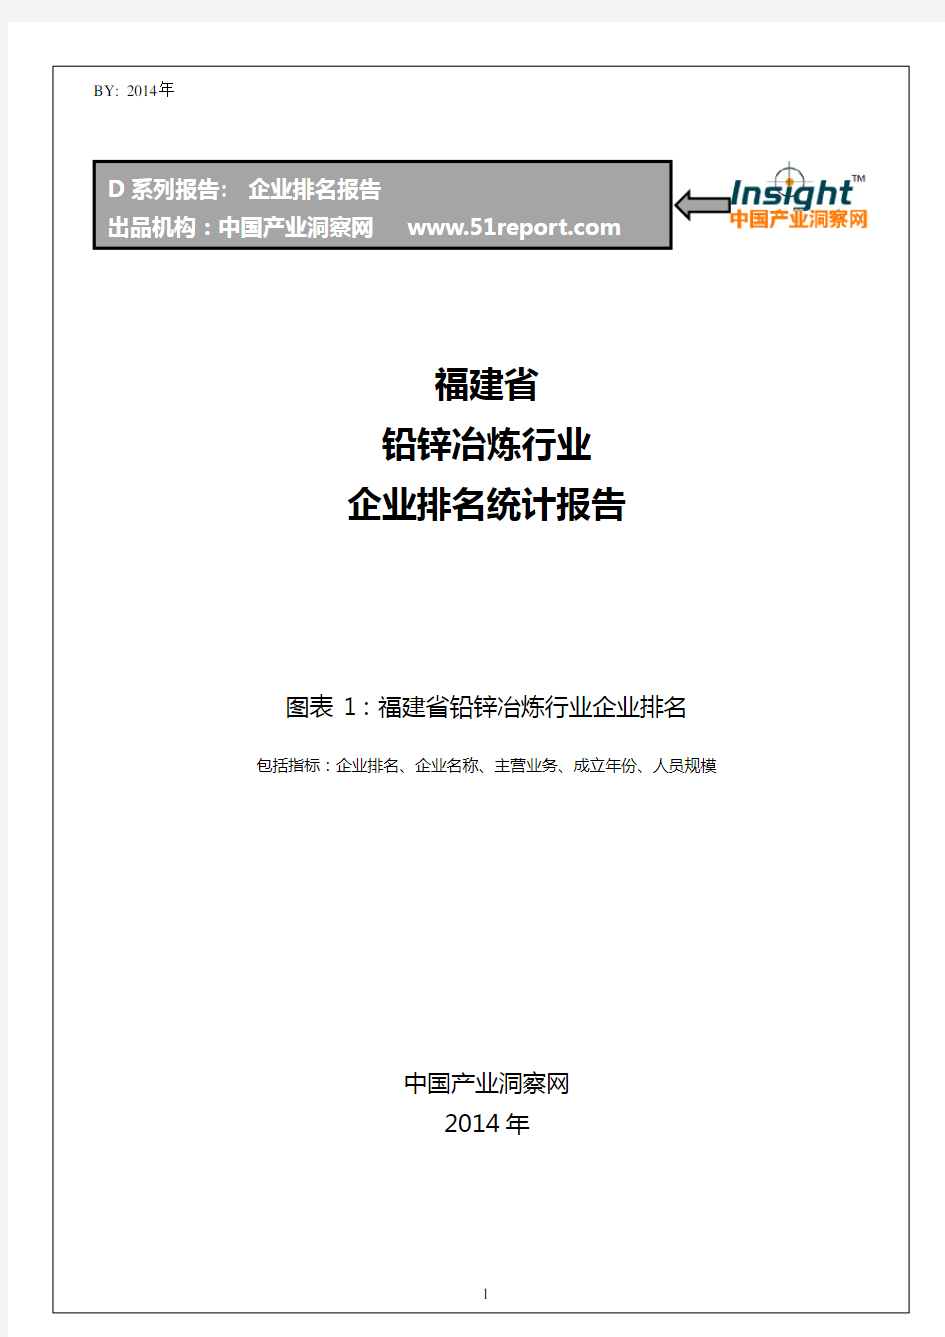 福建省铅锌冶炼行业企业排名统计报告